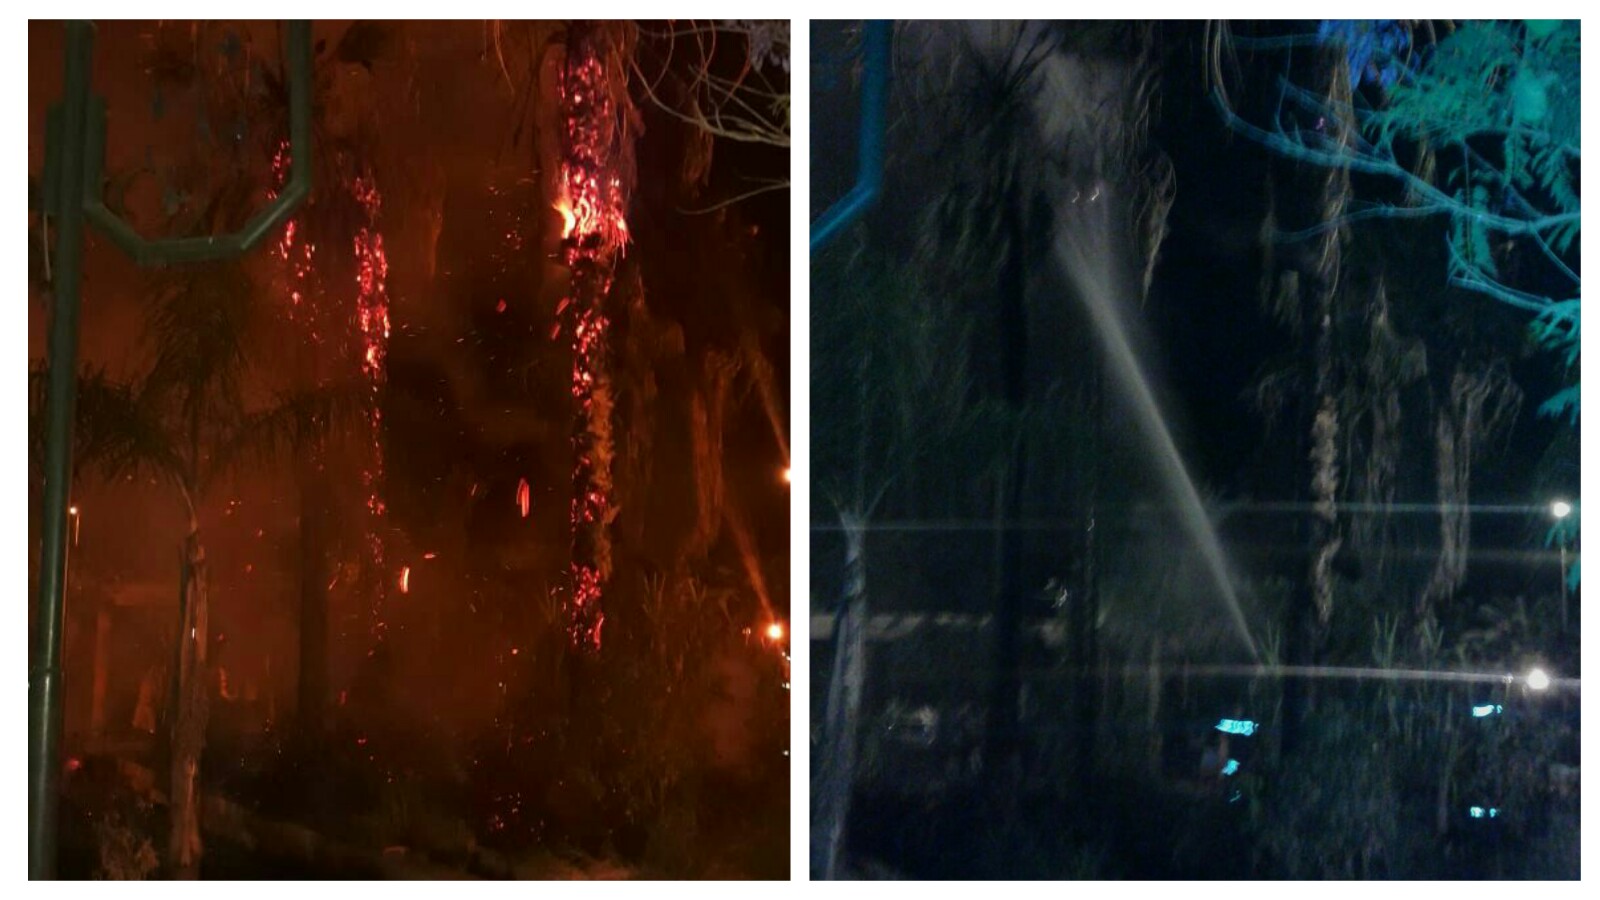 عاجل… اندلاع حريق بالحديقة المجاورة لبلدية قصبة تادلة و النيران تلتهم اشجار نخيل -الصور-